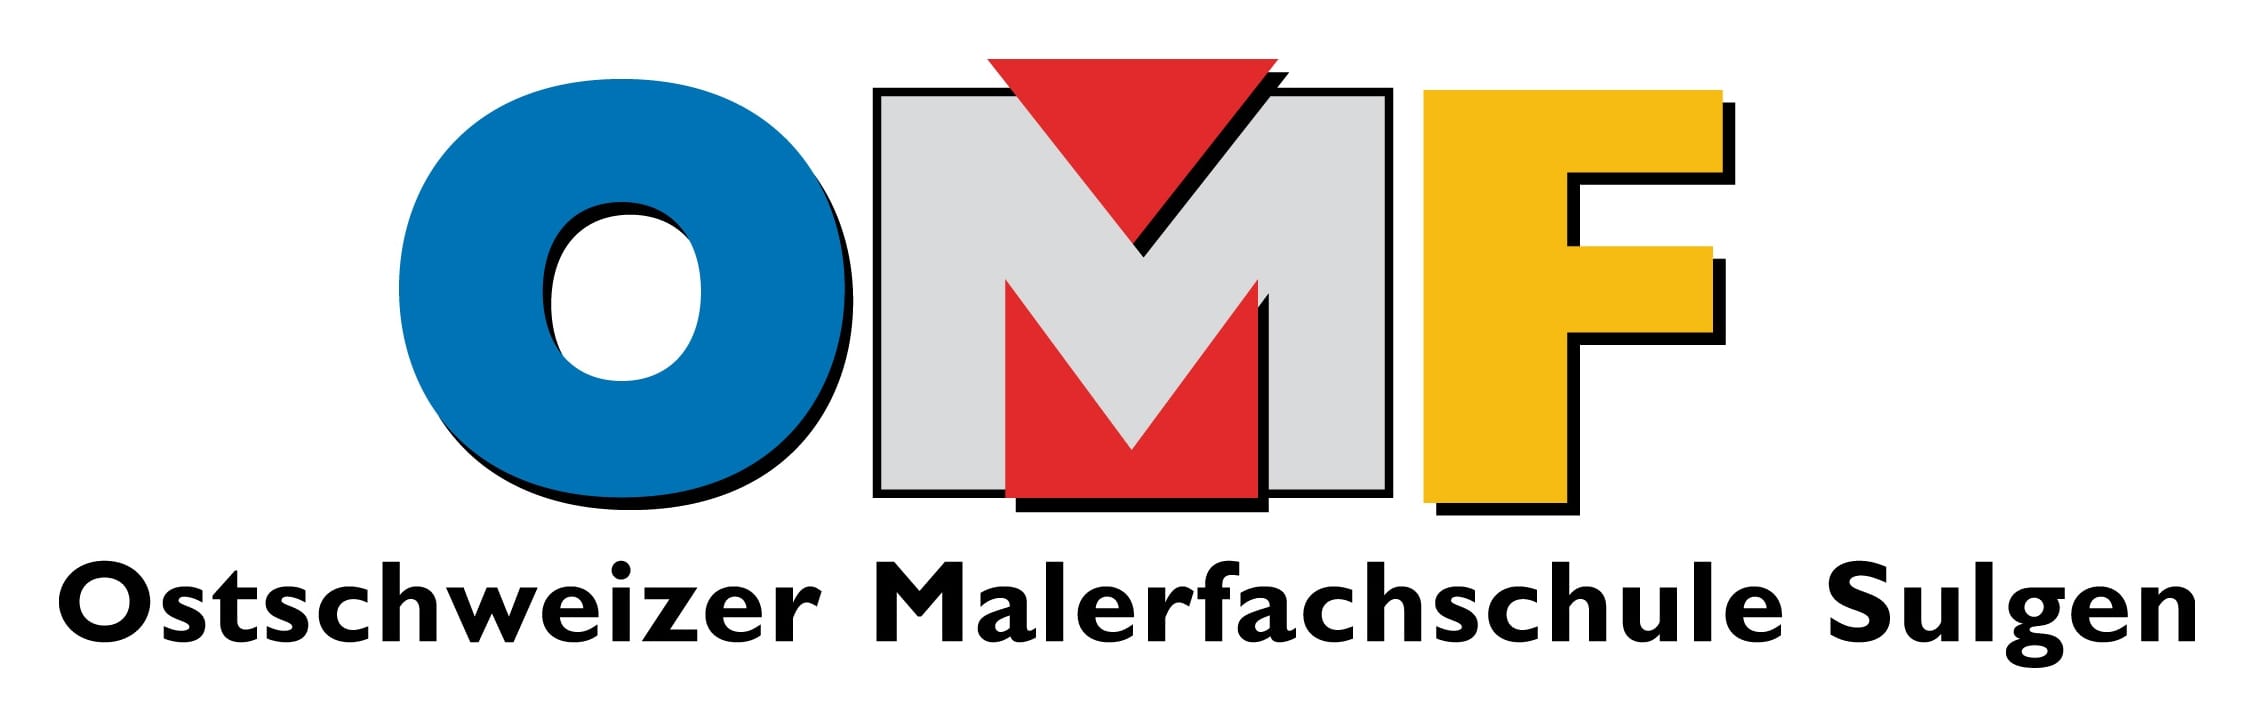 OMF - Ostschweizer Malerfachschule Sulgen